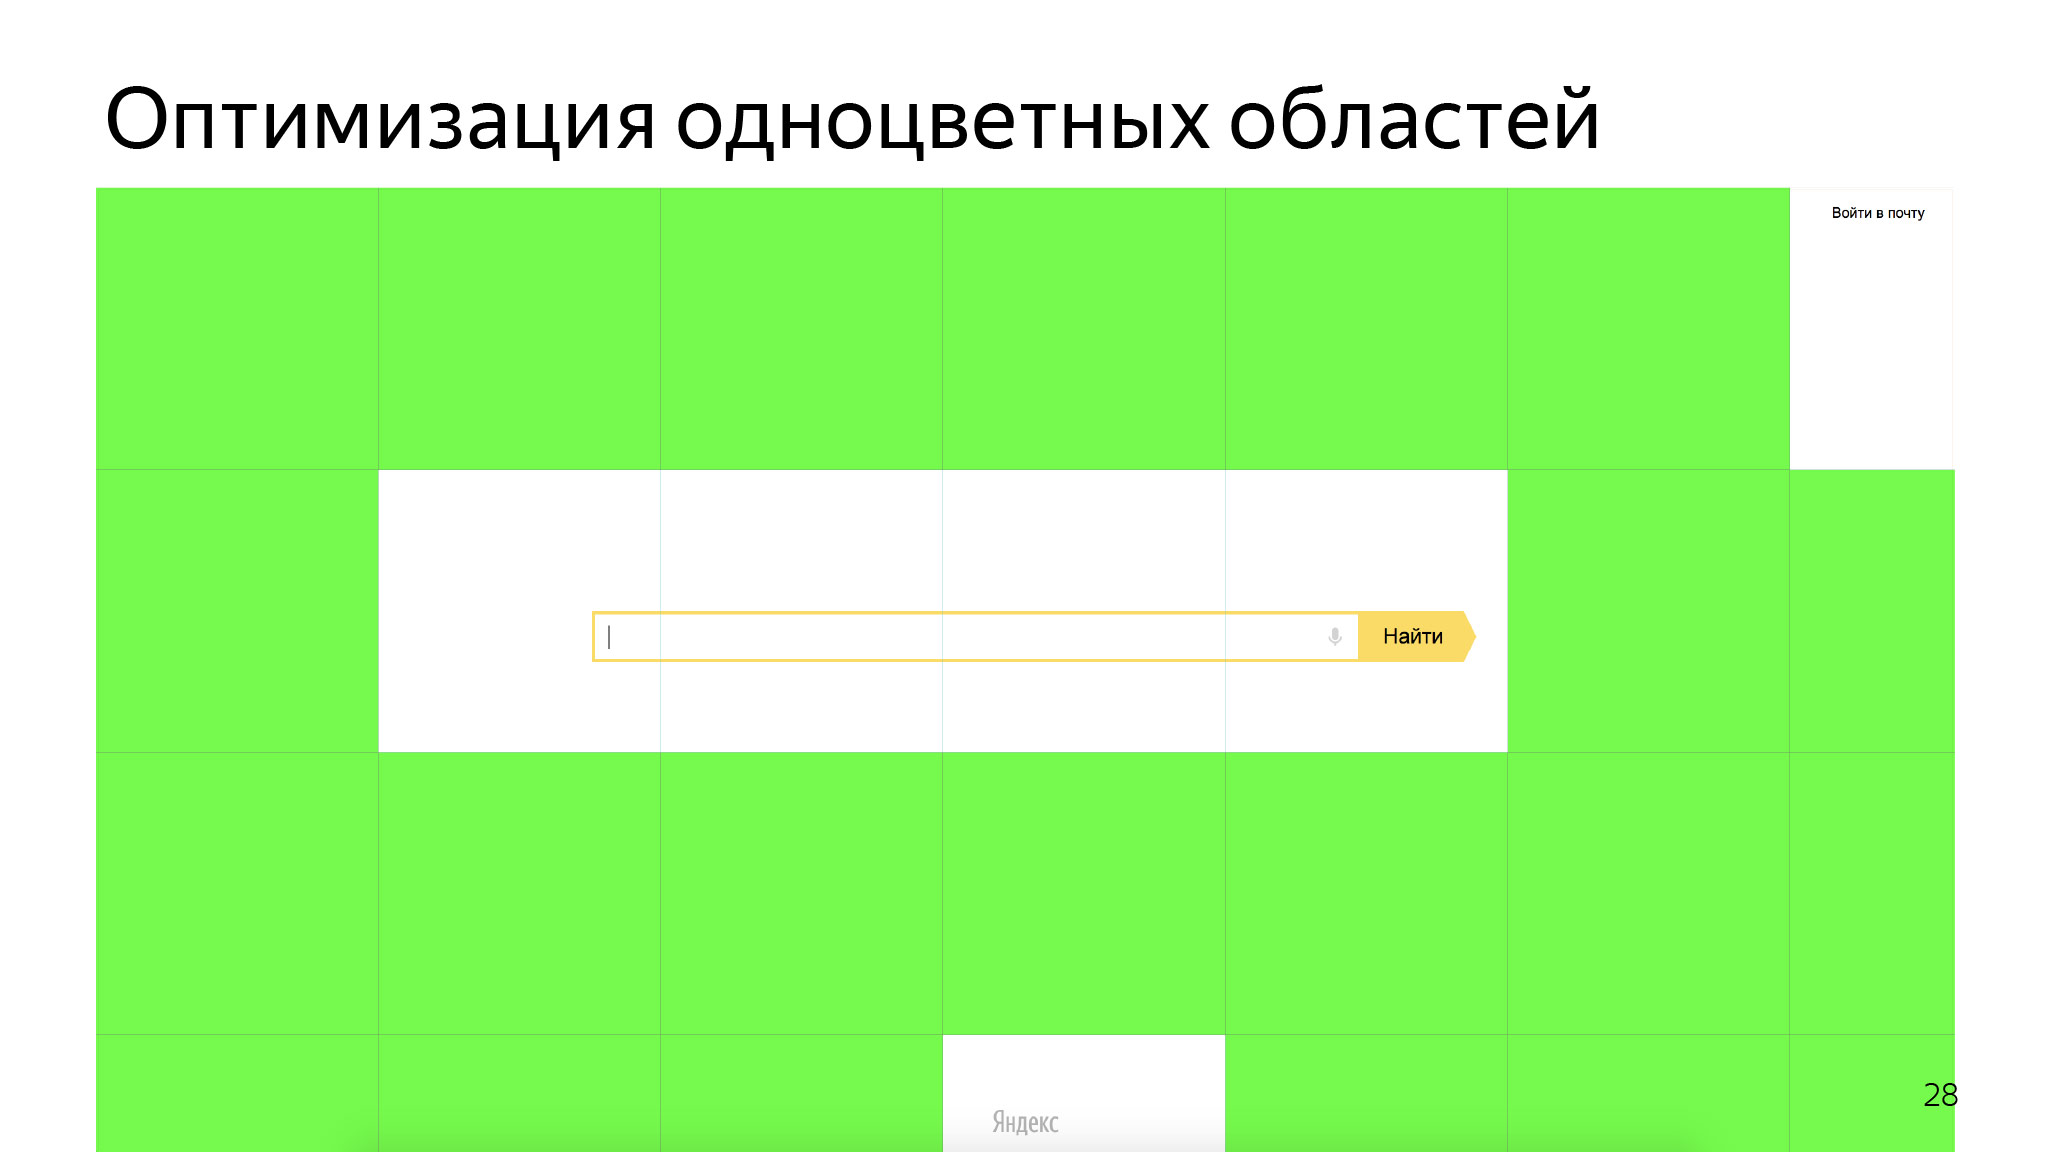 Как сэкономить ресурсы в браузере и не сломать веб. Доклад Яндекса - 15